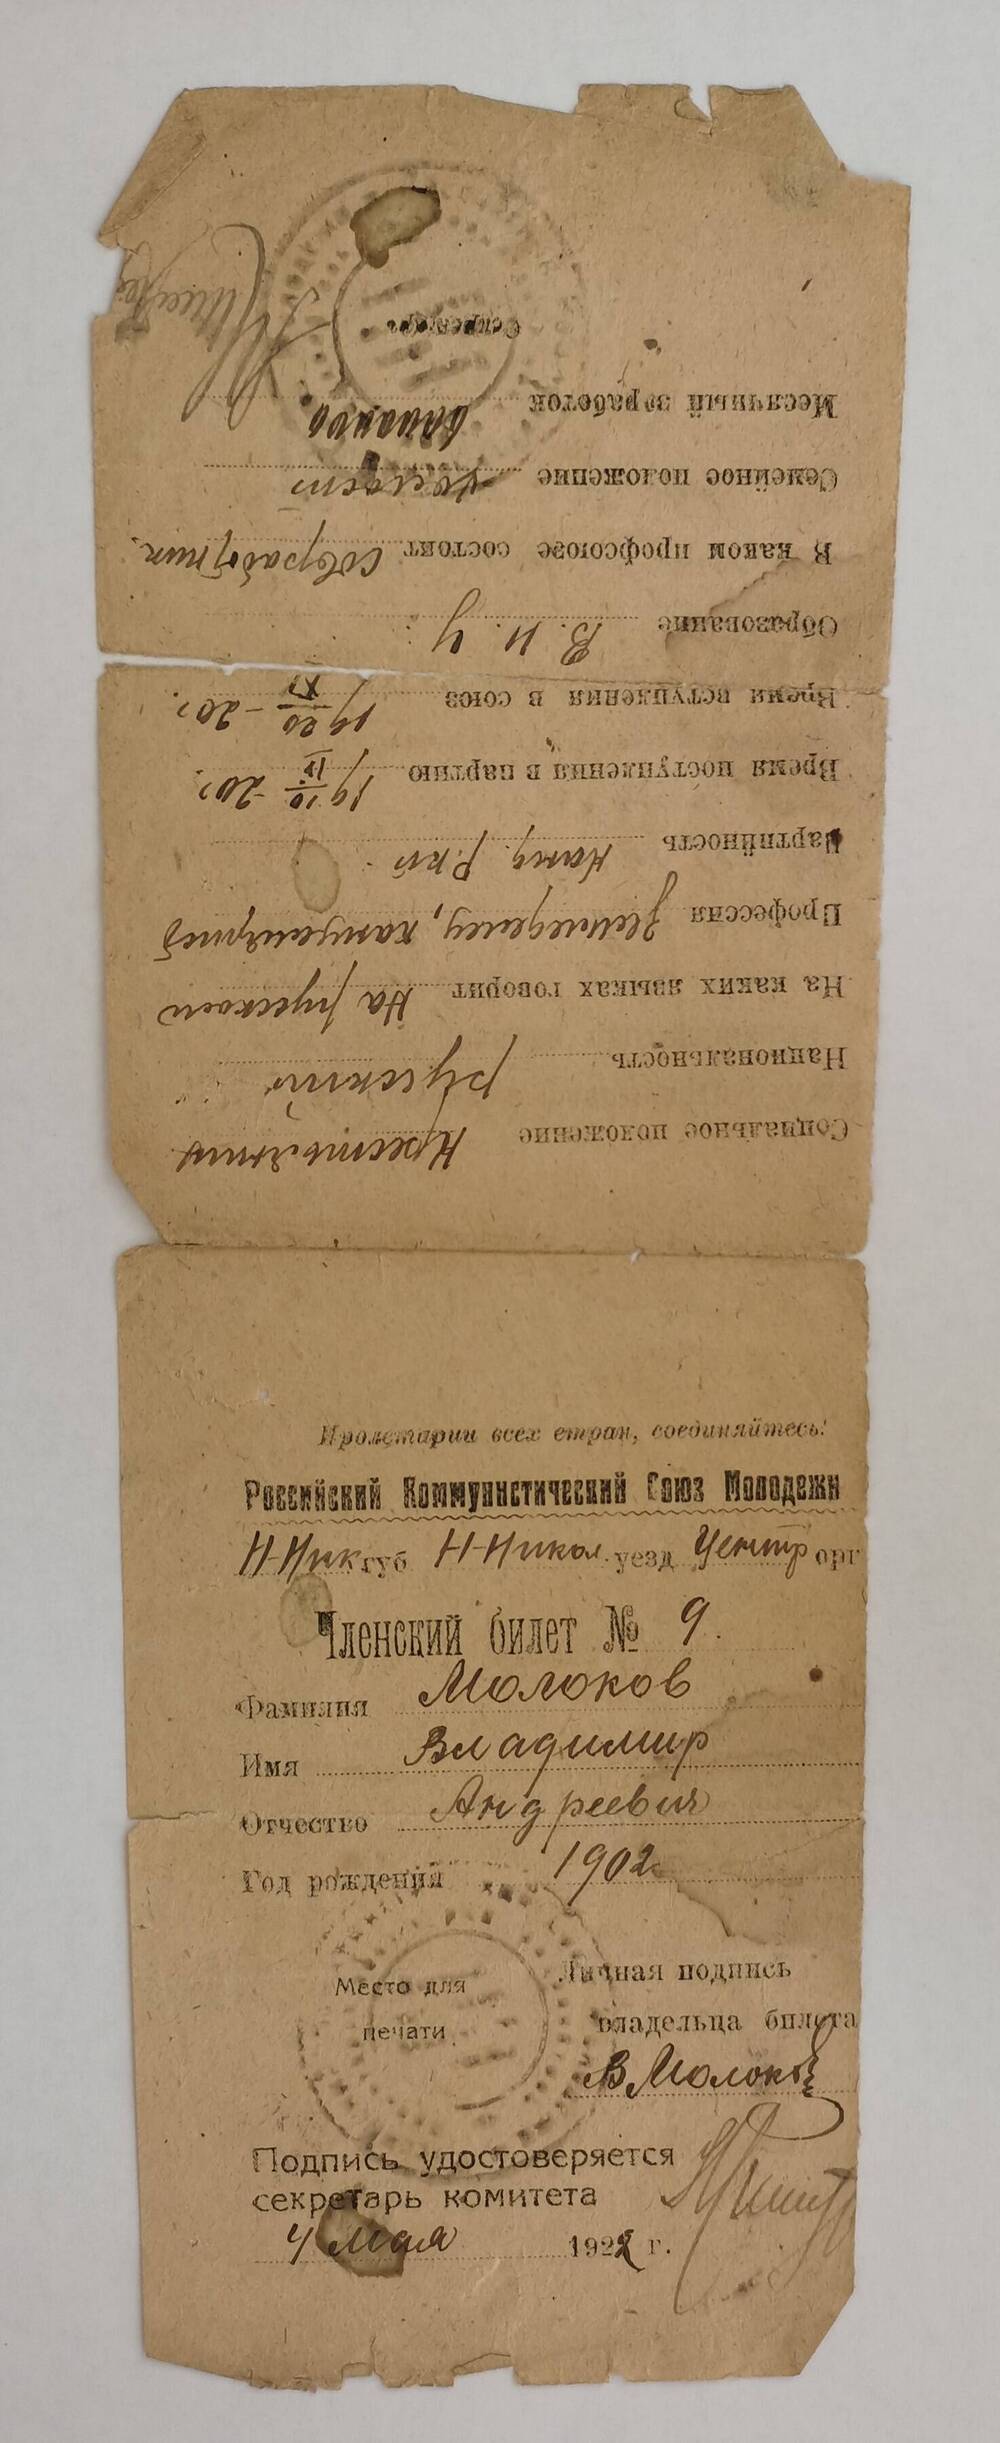 Членский билет № 9 Российского Коммунистического Союза Молодежи на имя Молокова Владимира Андреевича, выдан 4 мая 1922 г.